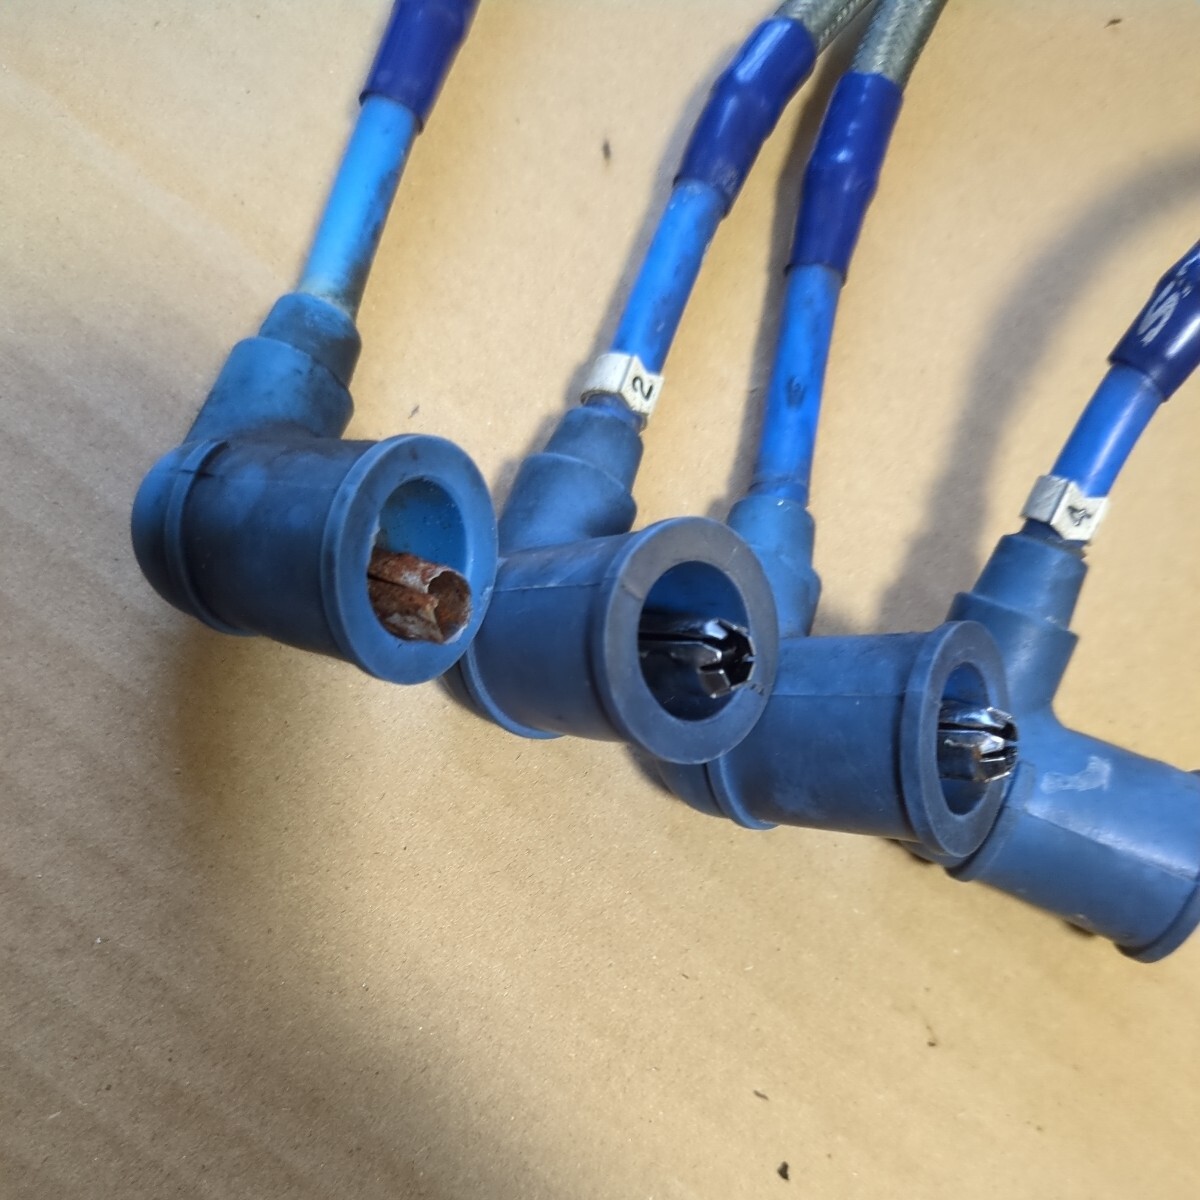 [ Junk ] Civic EK9 SPOON ложка plug cord высоковольтный кабель 